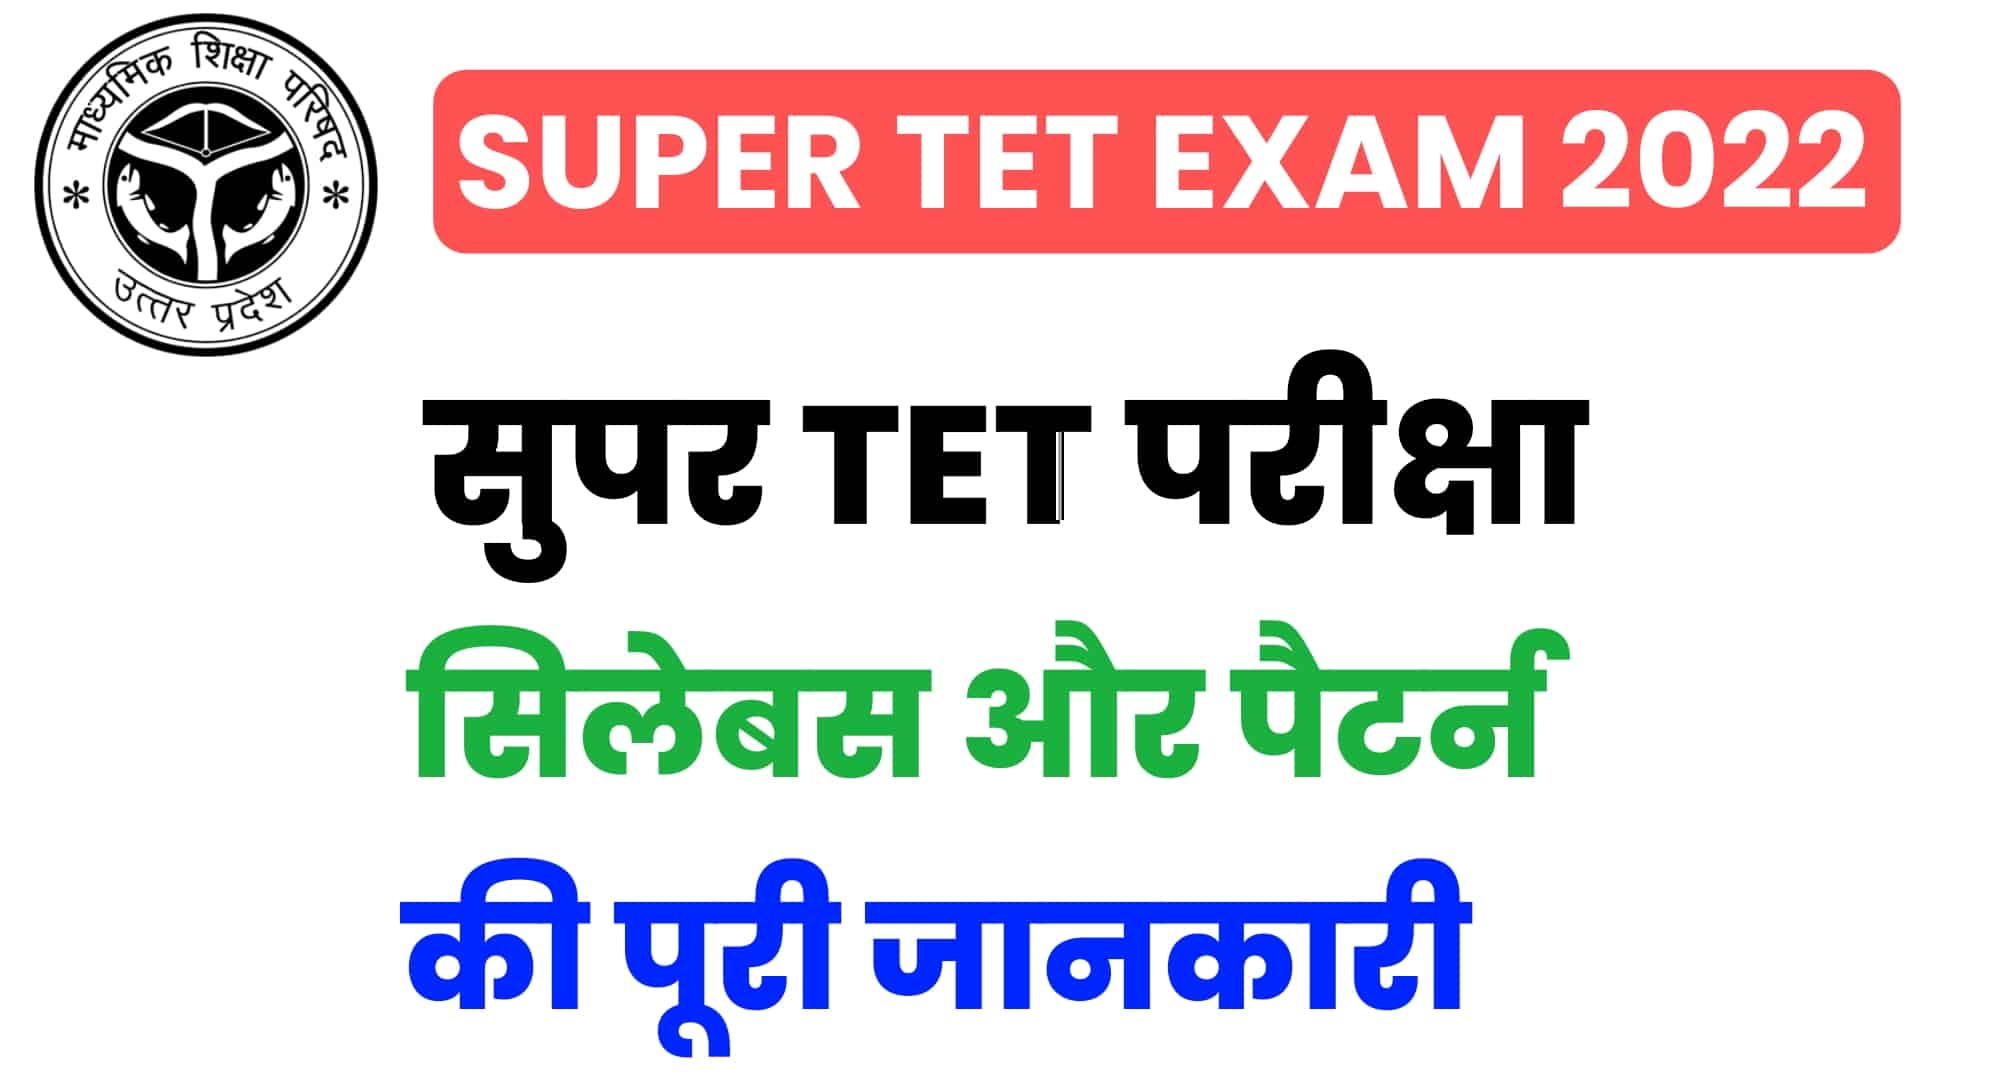 Super TET Syllabus 2022 In Hindi : सुपर टीईटी सिलेबस, परीक्षा पैटर्न की पूरी जानकारी